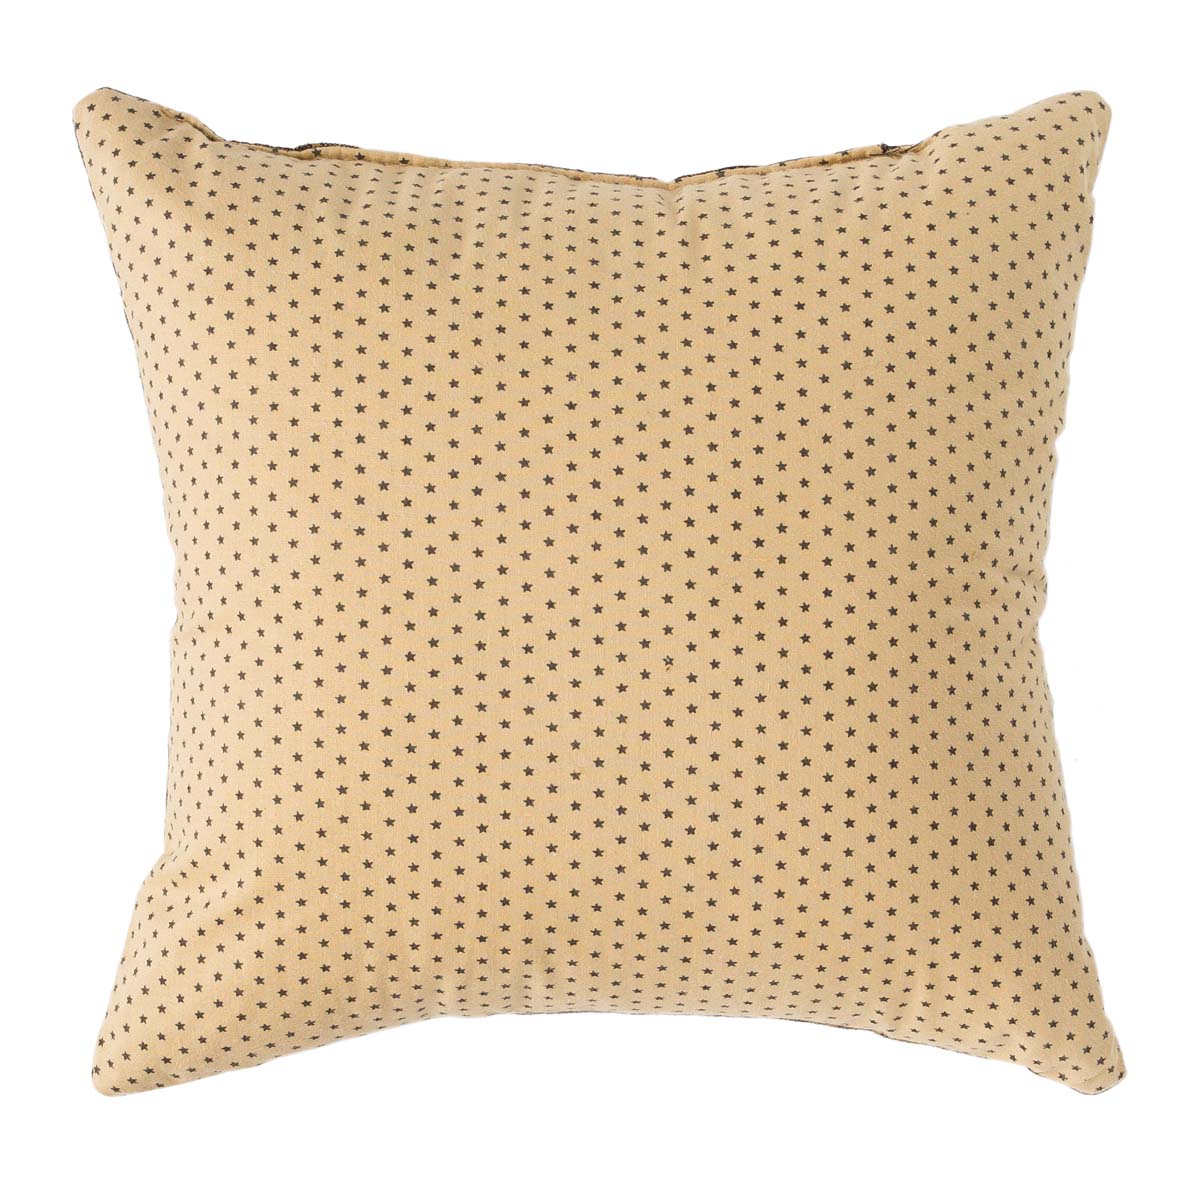 Kettle Grove Pillow Star